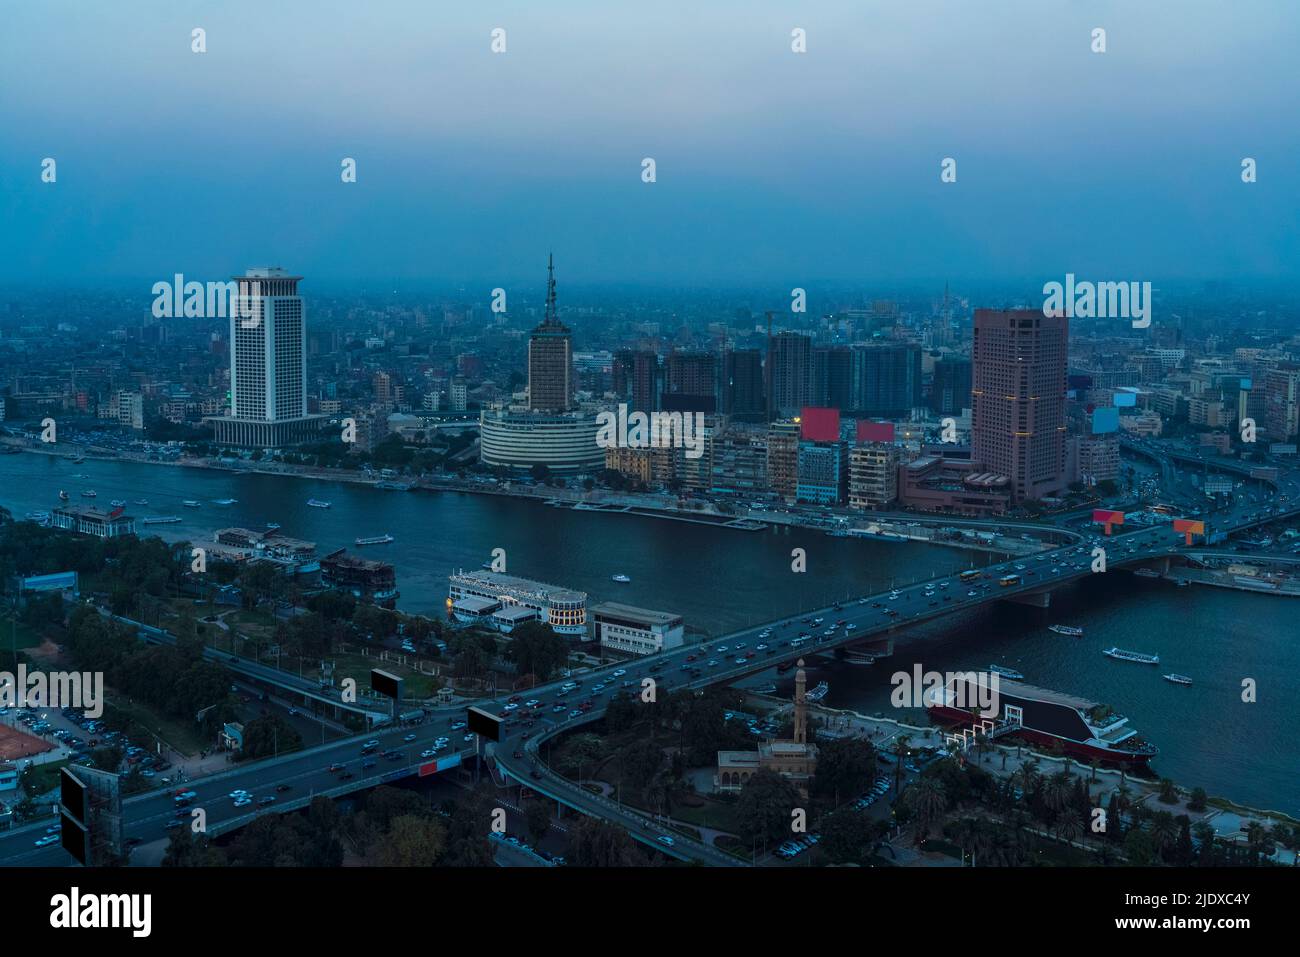 Égypte, le Caire, le Nil, le pont Qasr El Nil et les bâtiments du centre-ville avoisinants au crépuscule Banque D'Images